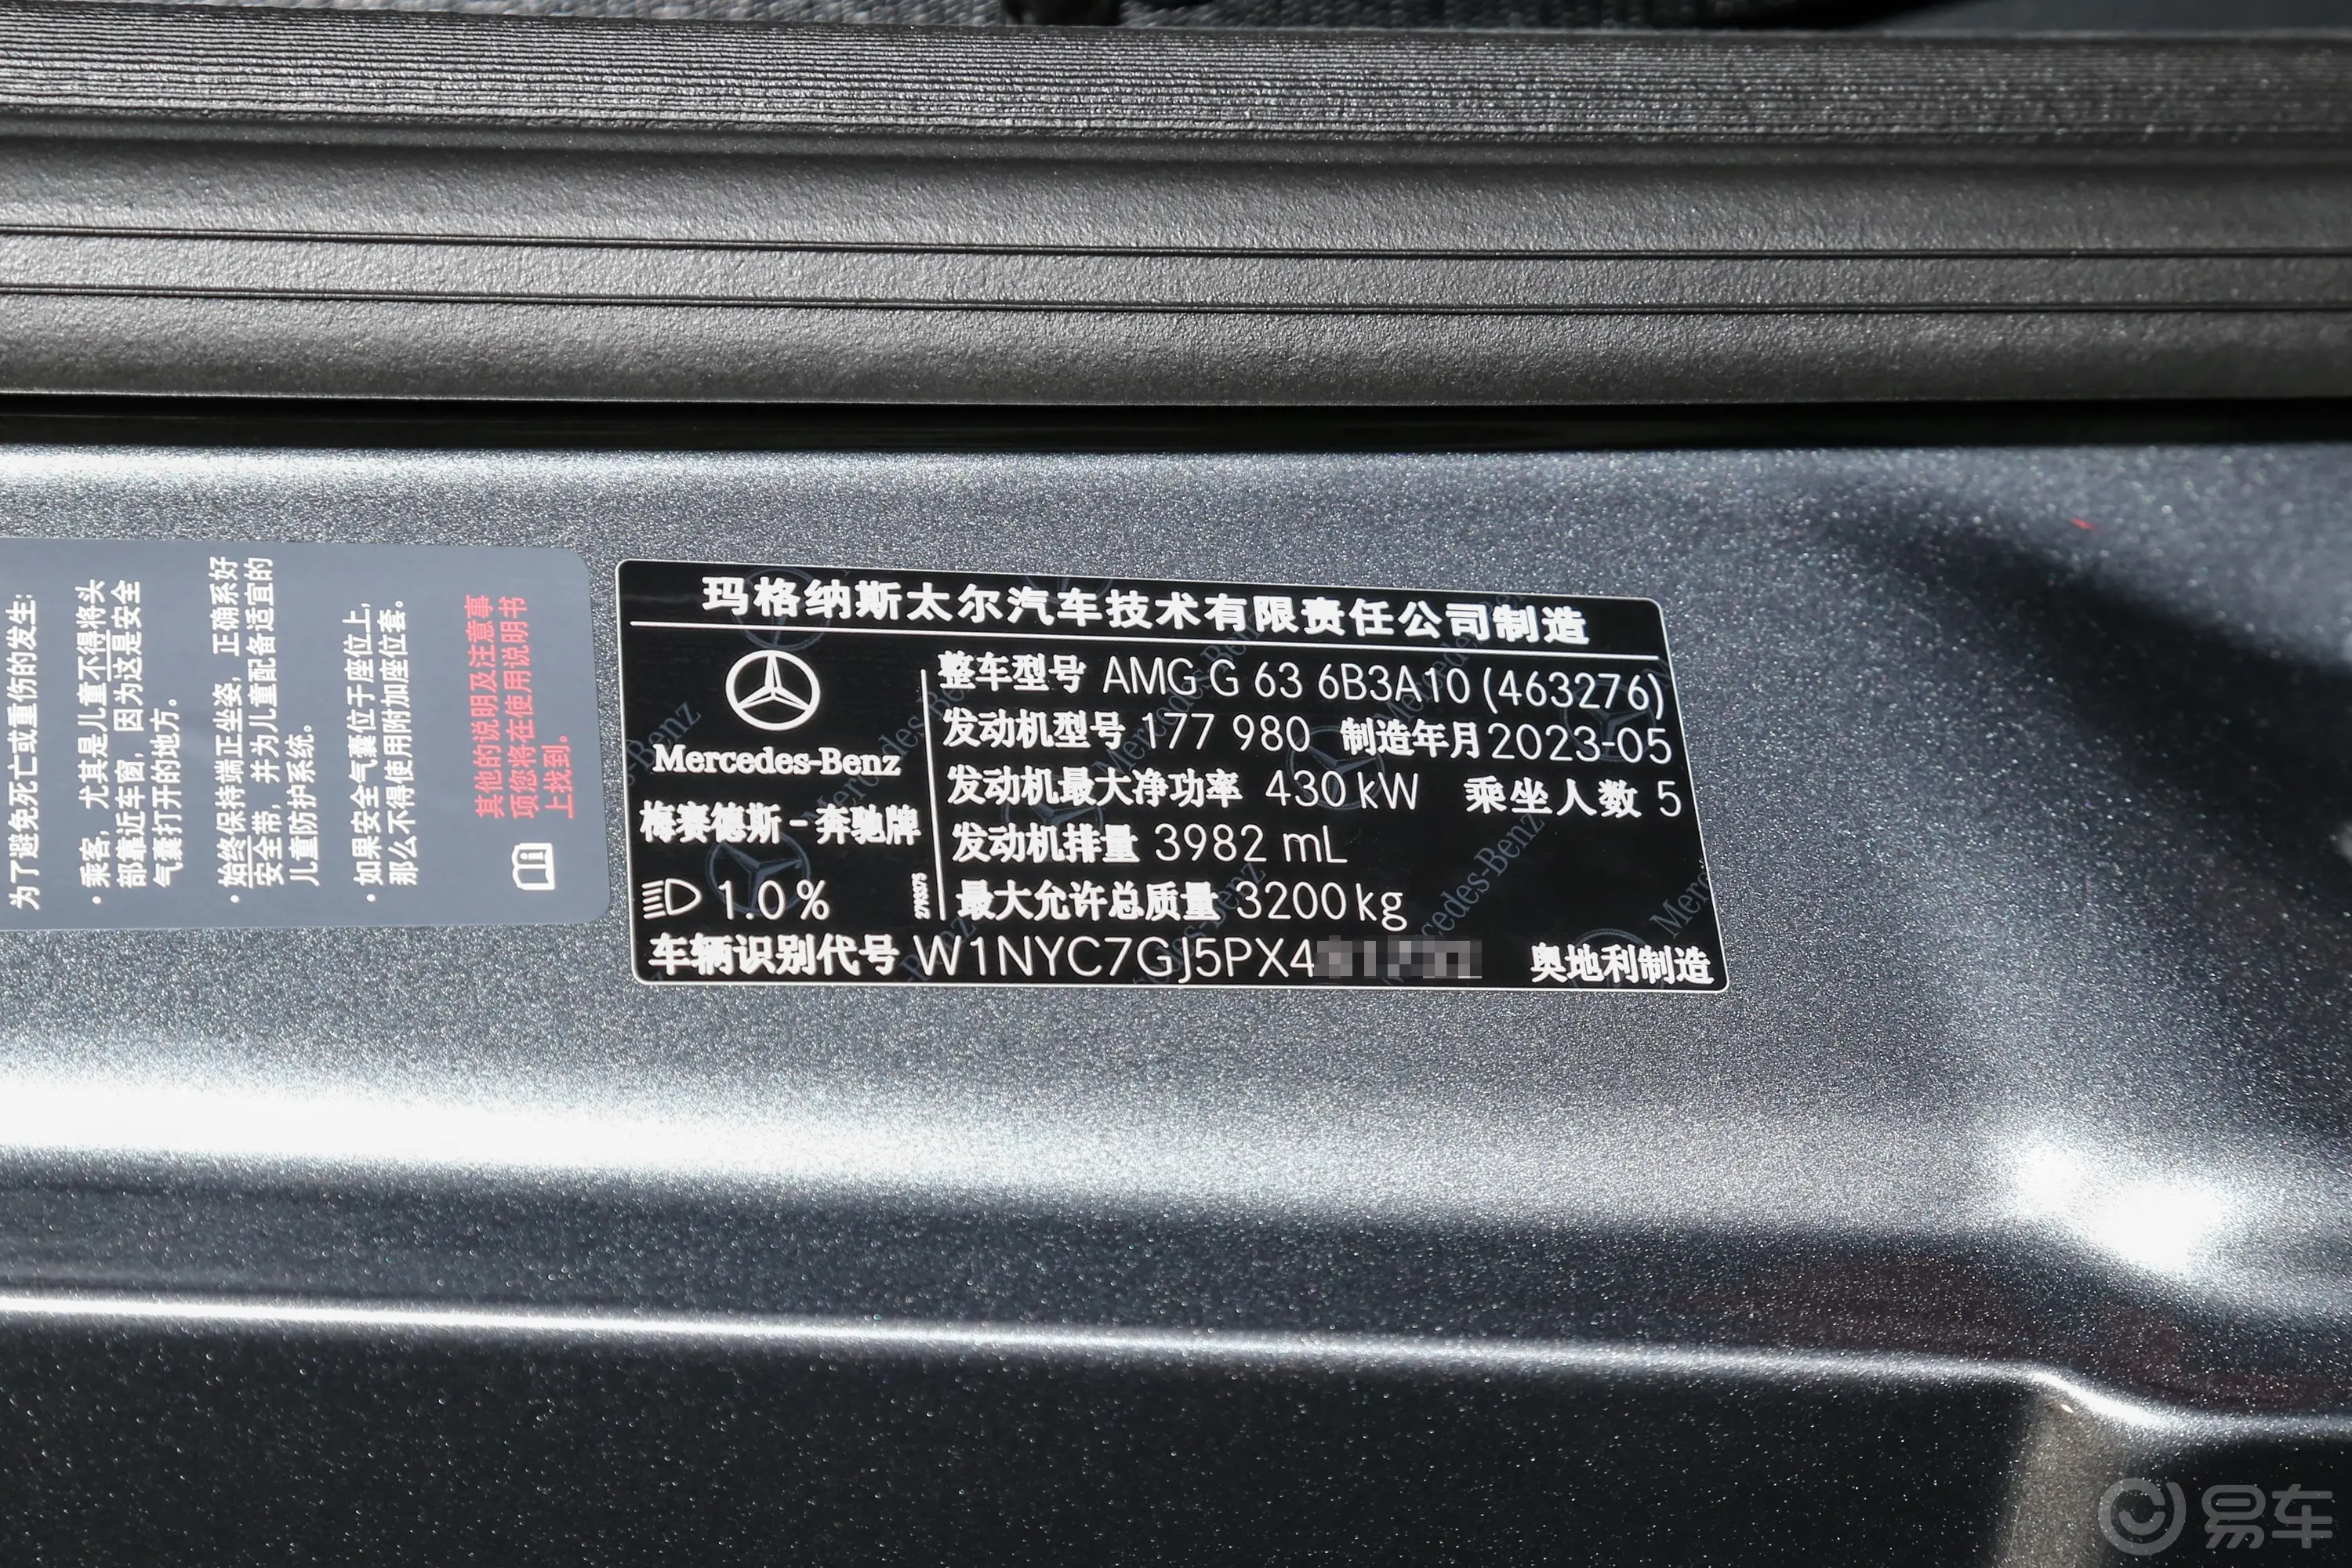 奔驰G级 AMGAMG G 63车辆信息铭牌